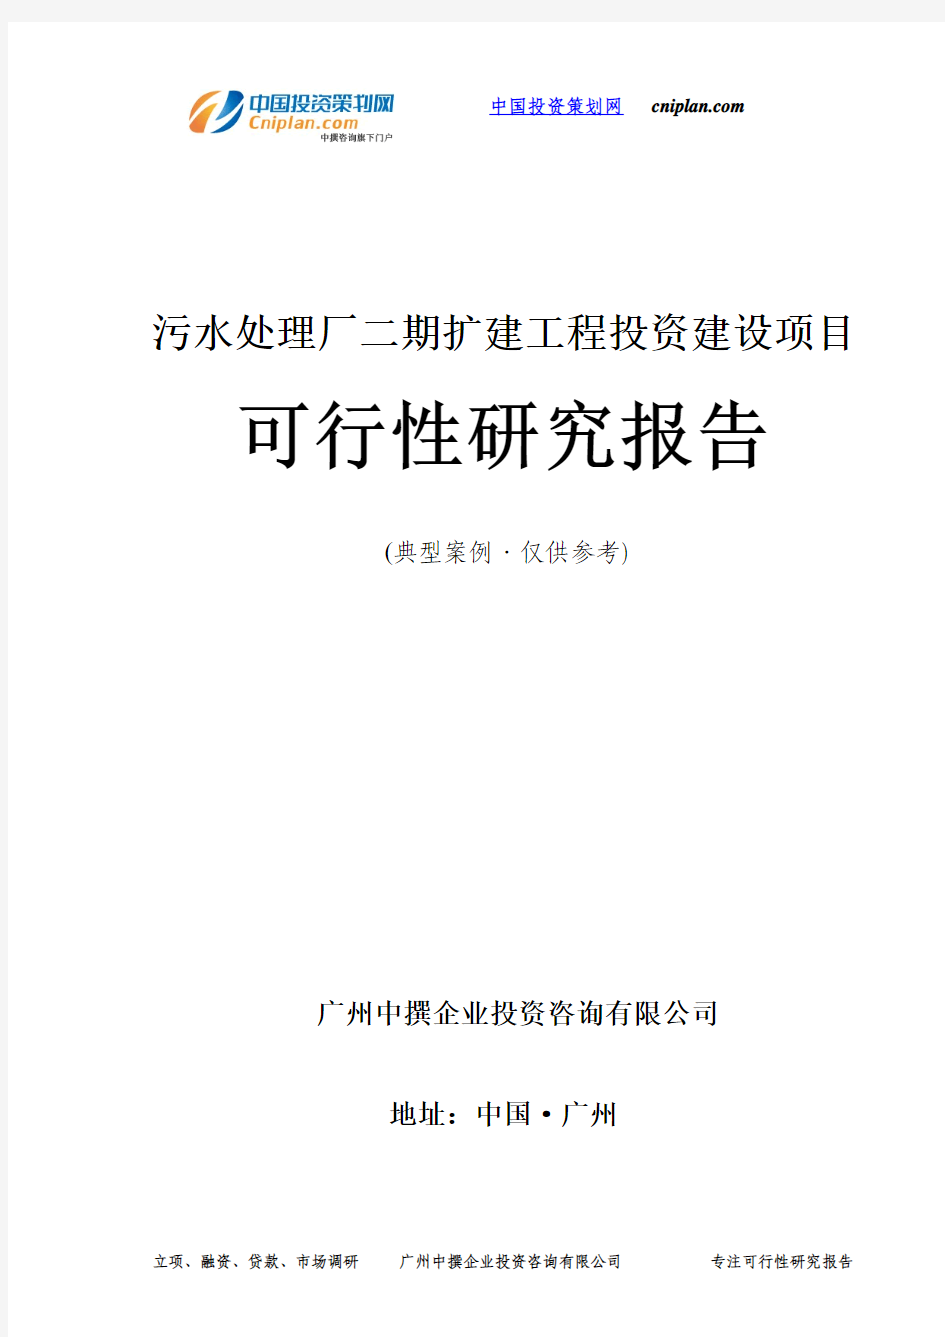 污水处理厂二期扩建工程投资建设项目可行性研究报告-广州中撰咨询